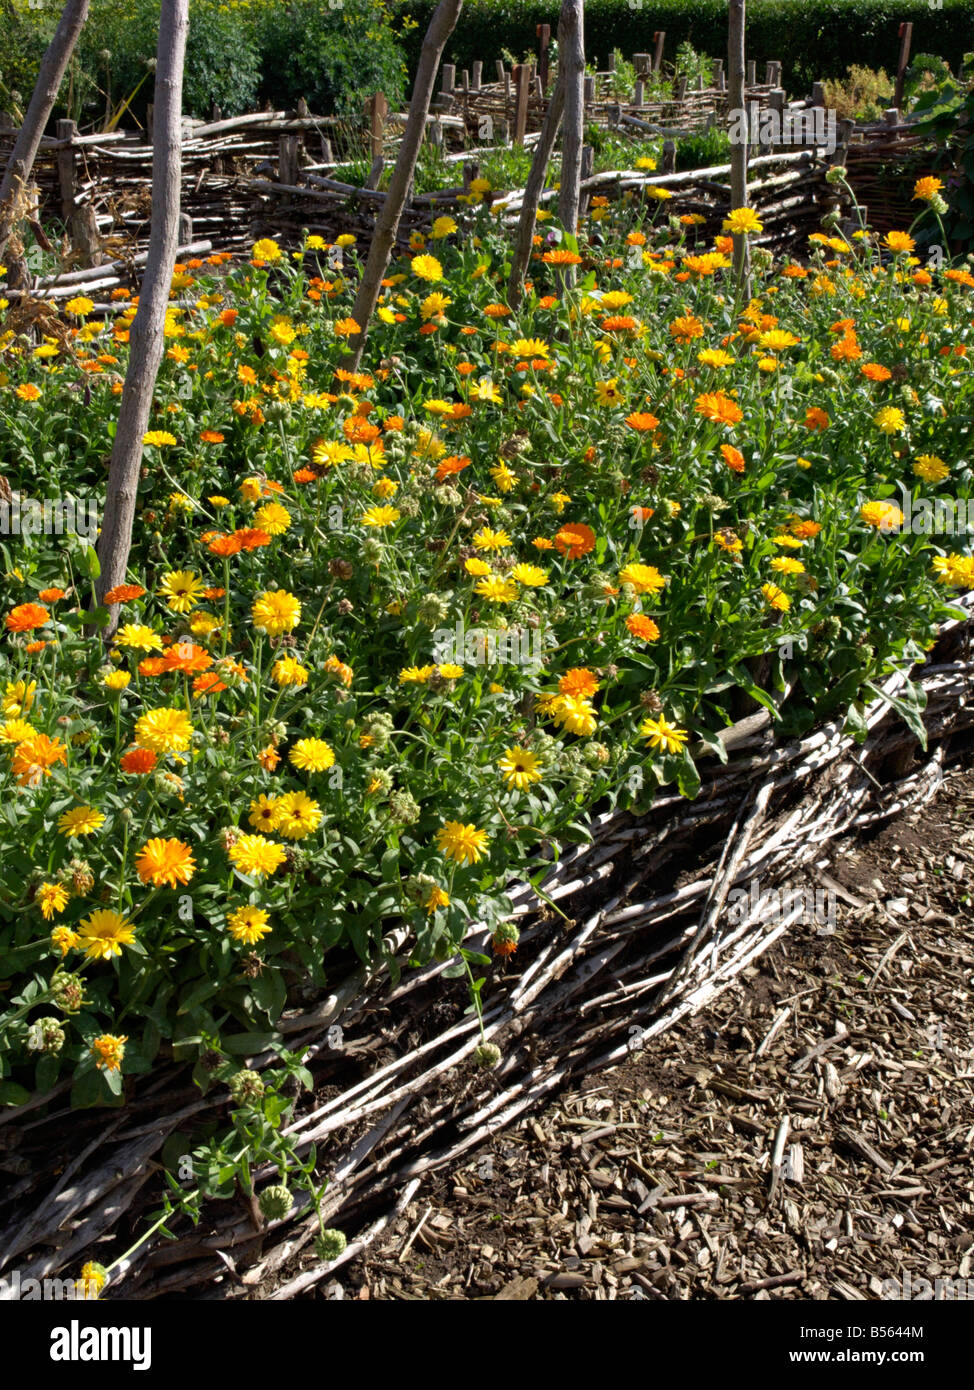 Pot marigold (Calendula officinalis) Stock Photo